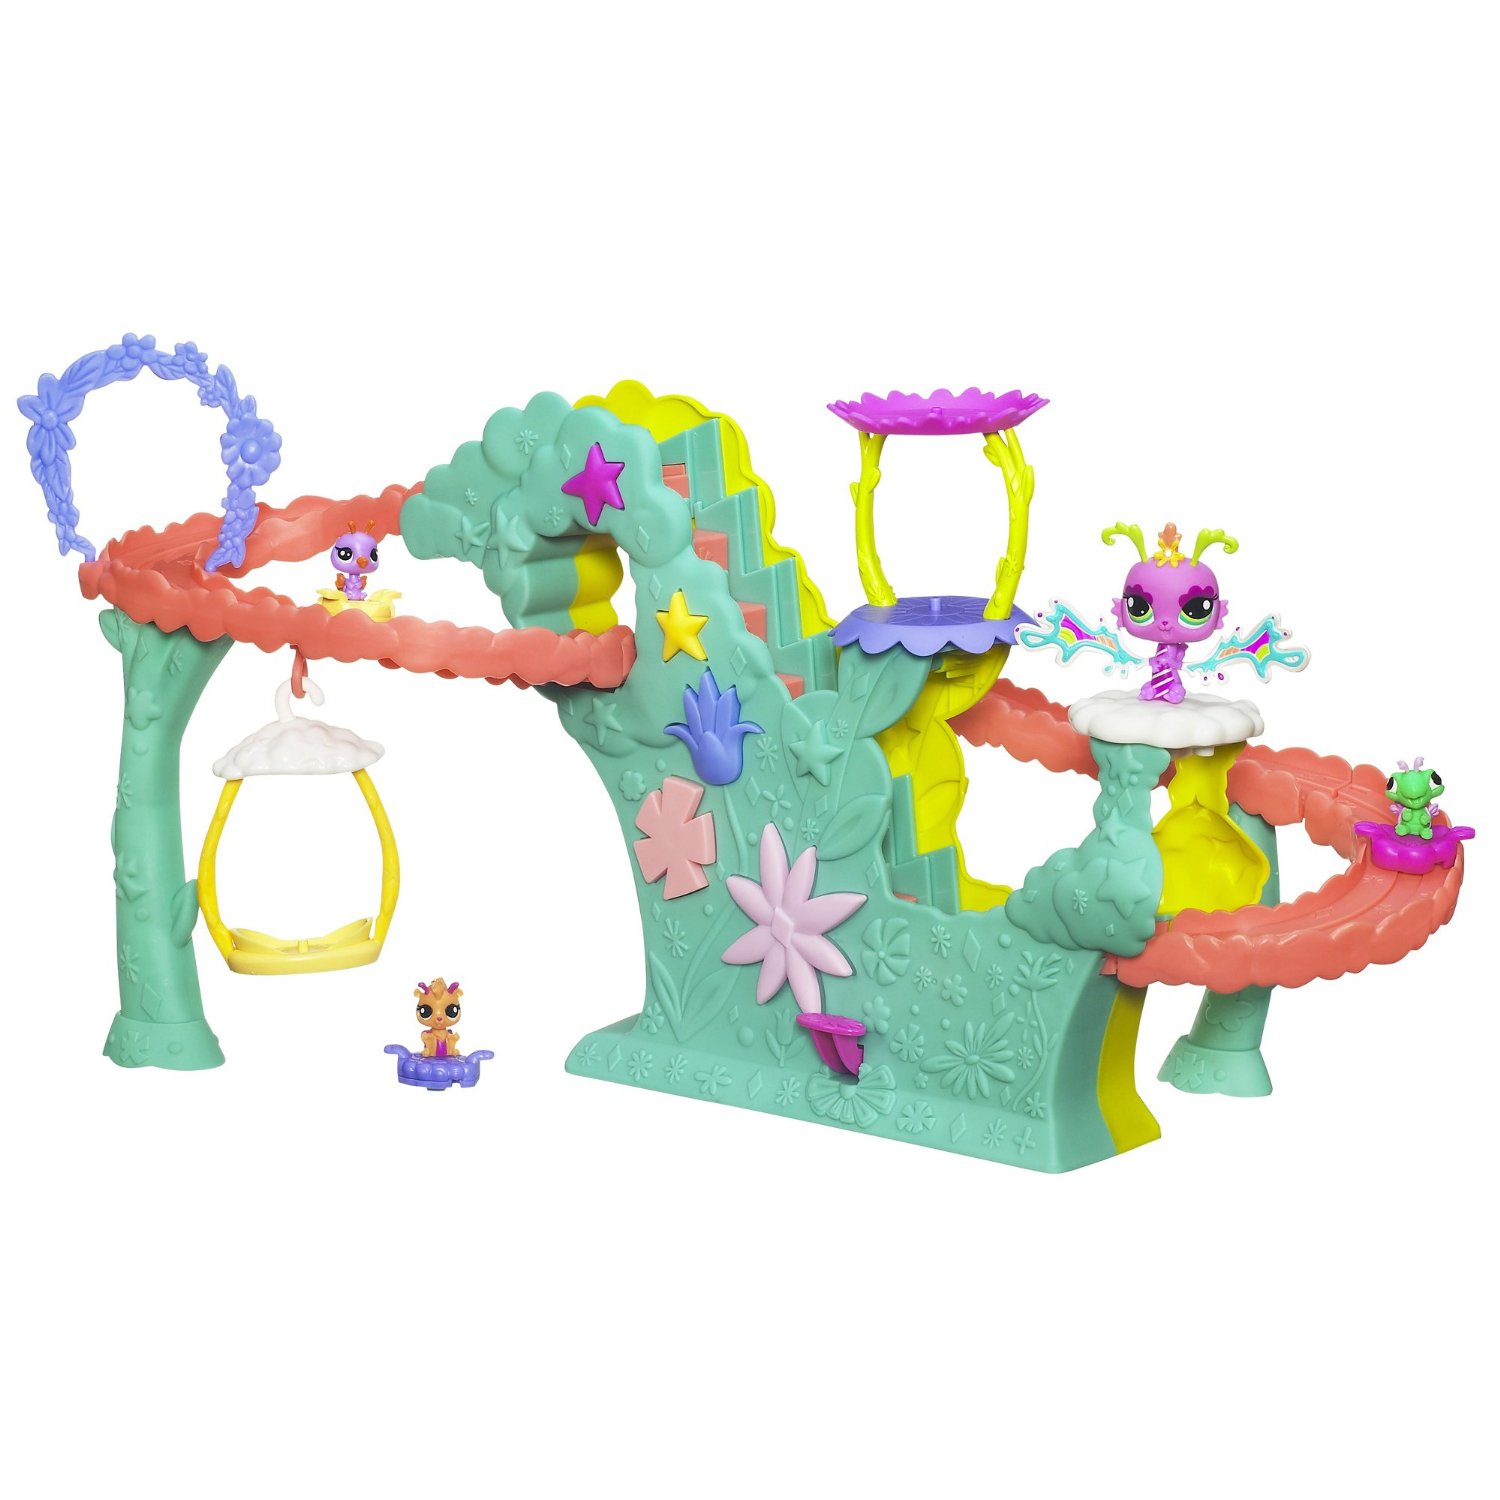 Littlest Pet Shop Fairies Fairy Fun Rollercoaster Playset Only $21.10 (Reg. $32.99)